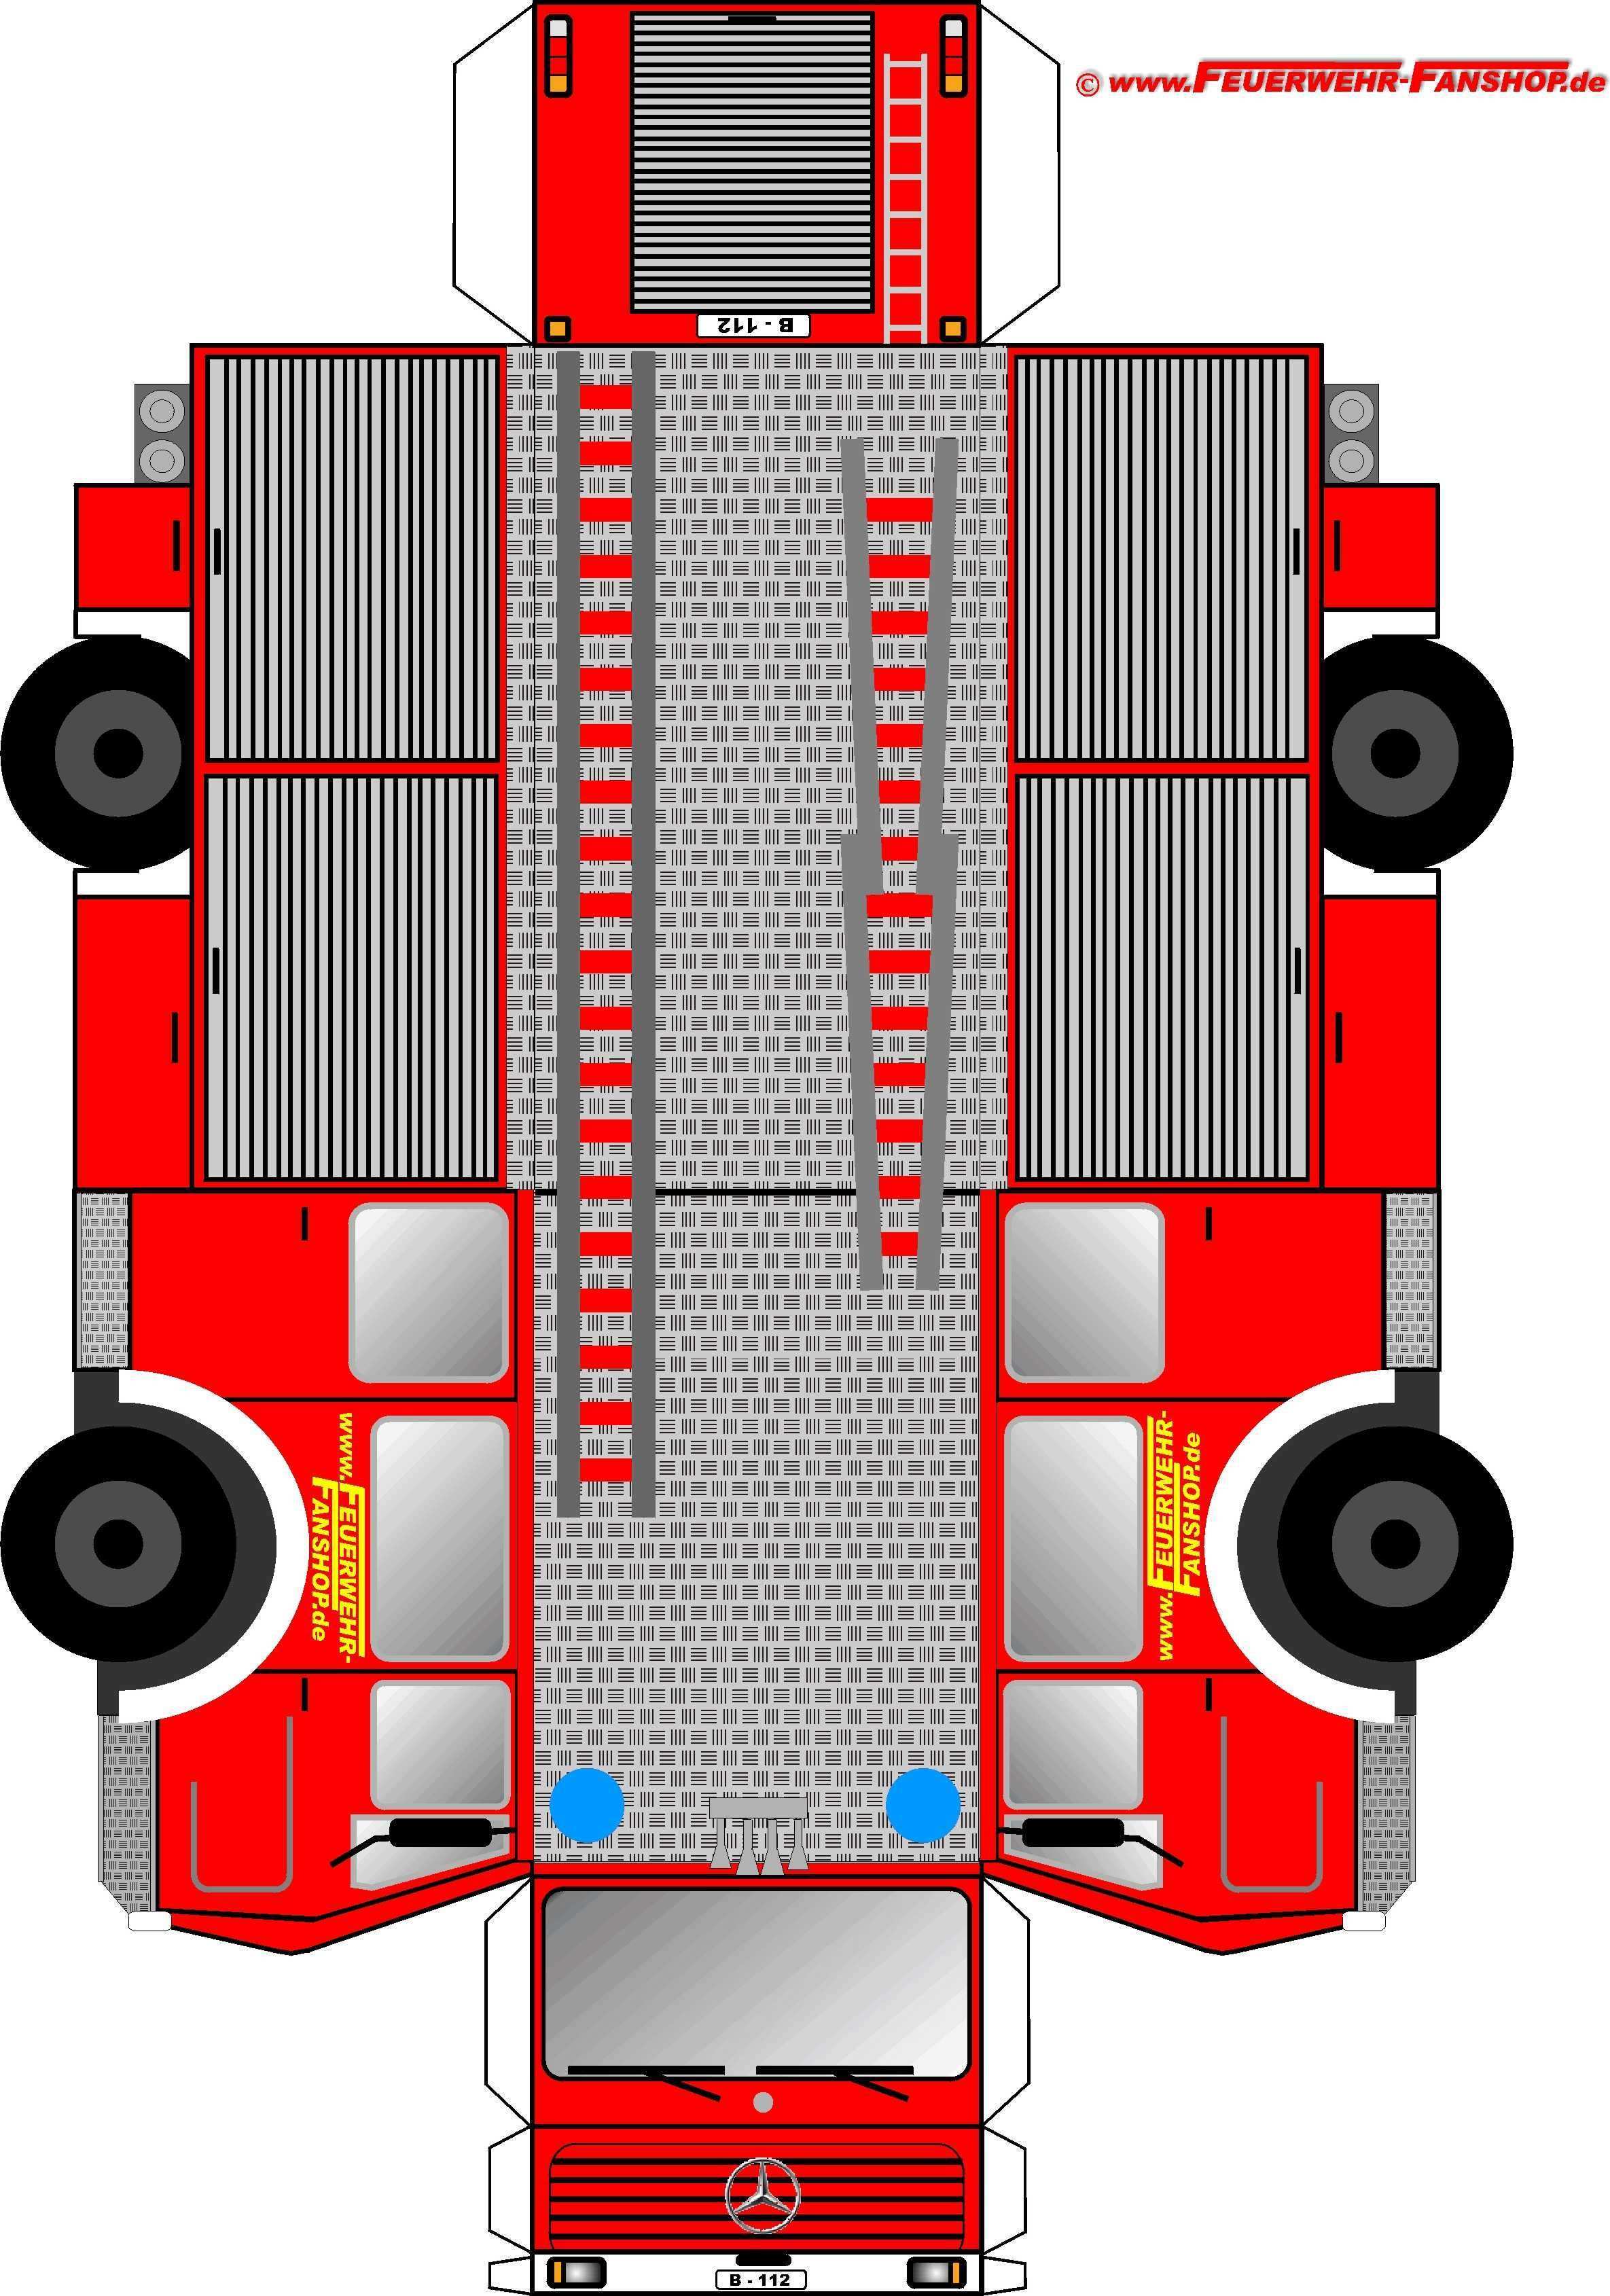 Feuerwehrauto Basteln Camion De Bomberos Coche De Carton Coche De Bomberos